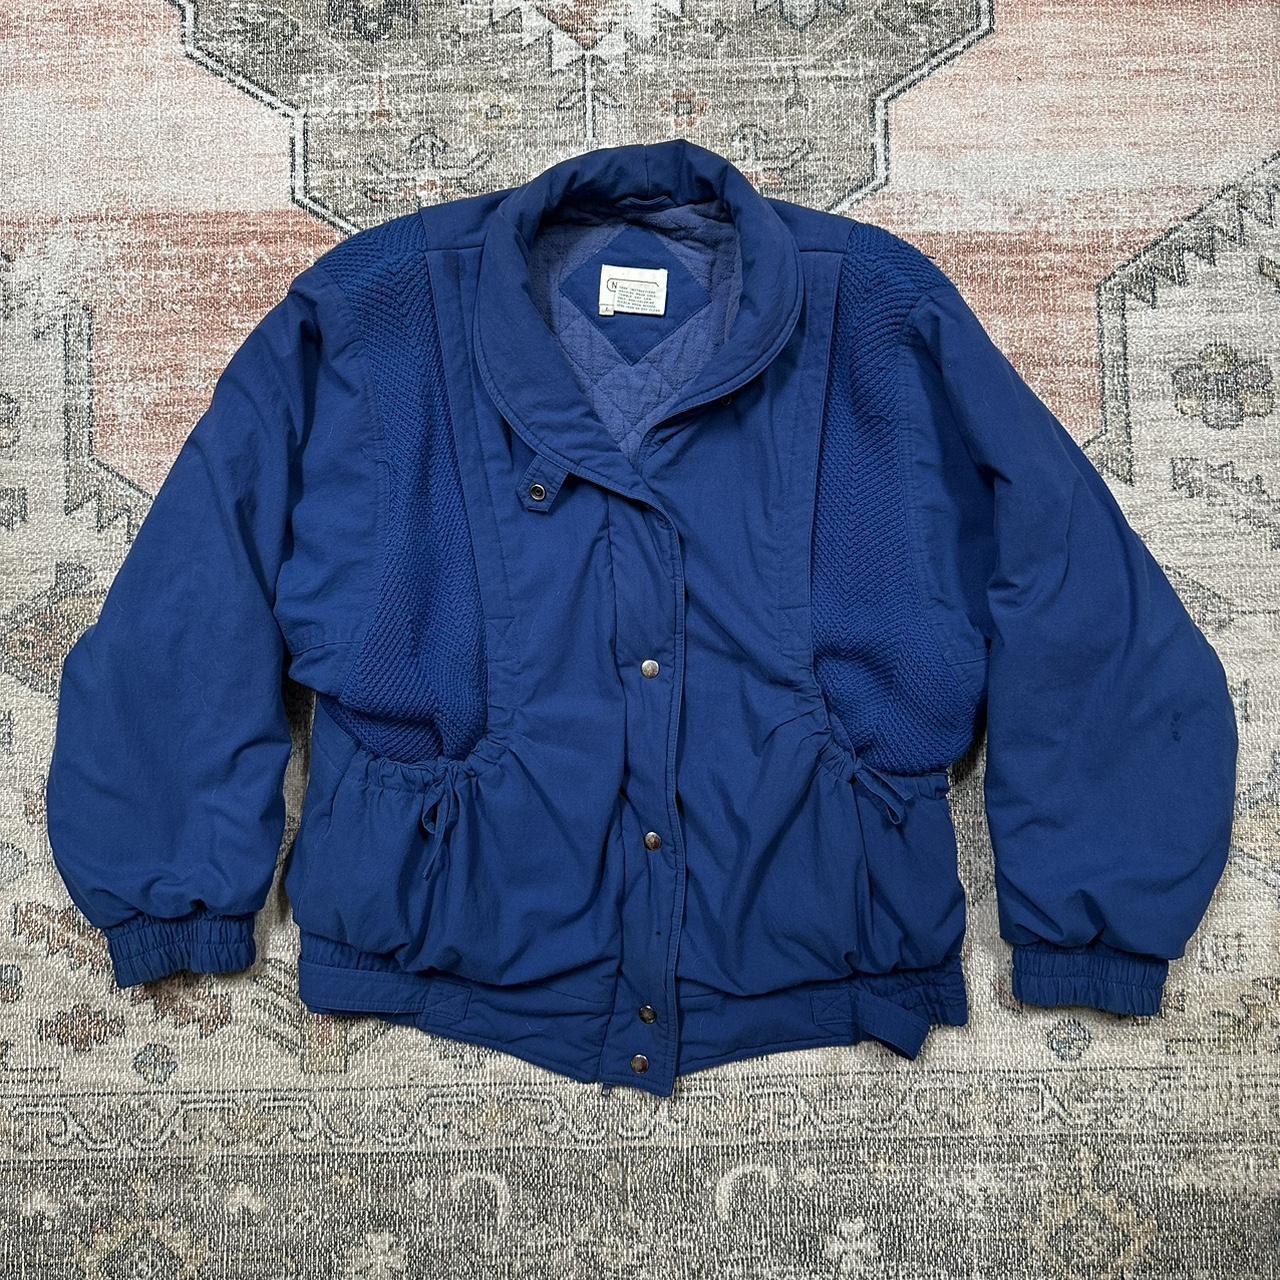 vintage Neil Martin jacket rlly cool details reminds... - Depop